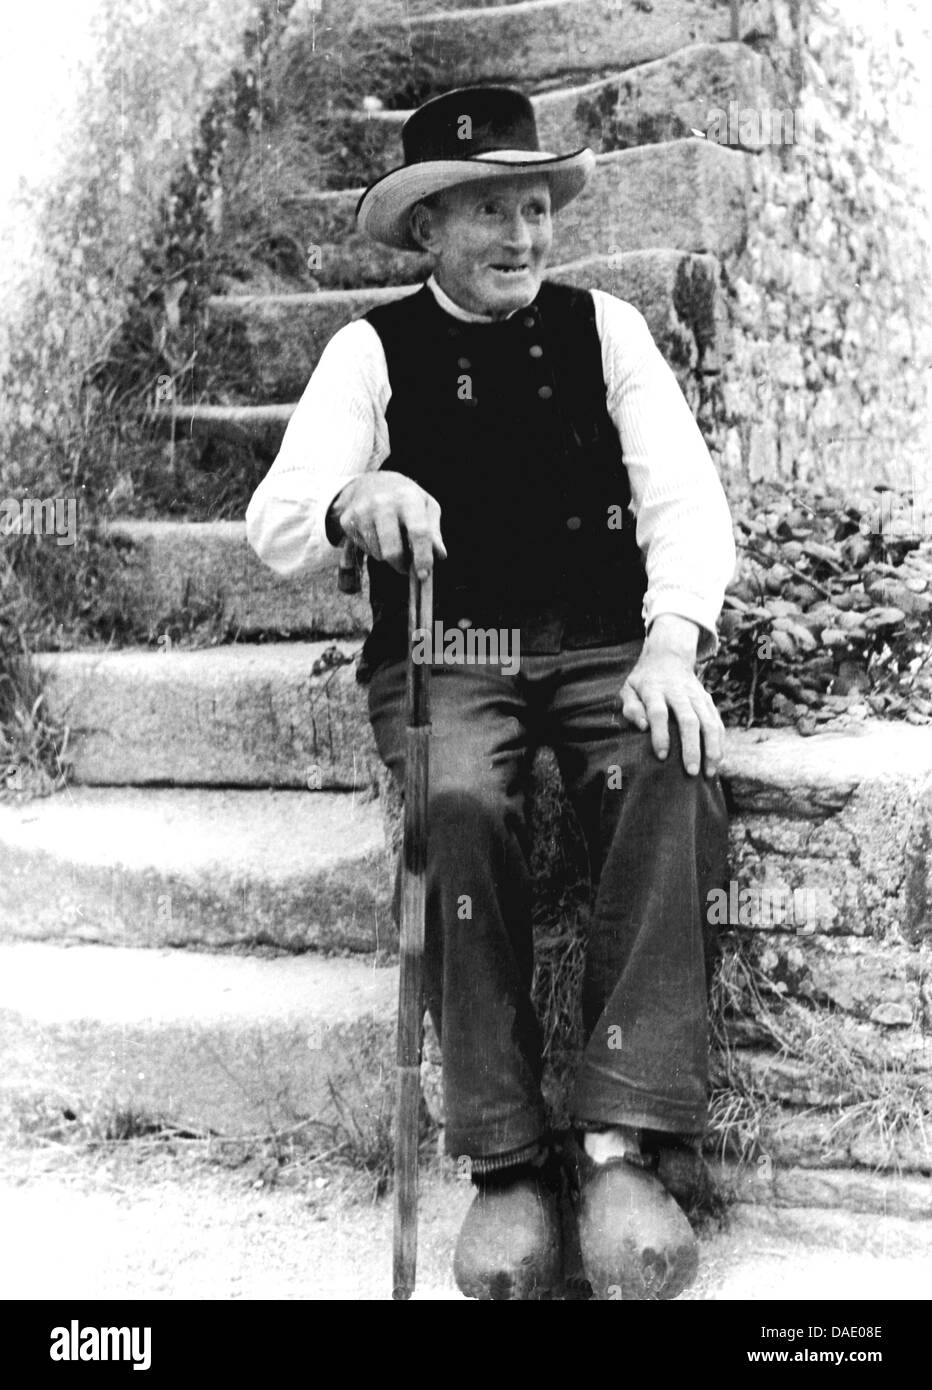 Vieux homme portant des chaussures en bois. Image by photographe Fred Stein (1909-1967) qui a émigré à partir de 1933 l'Allemagne nazie pour la France et enfin aux États-Unis. Banque D'Images